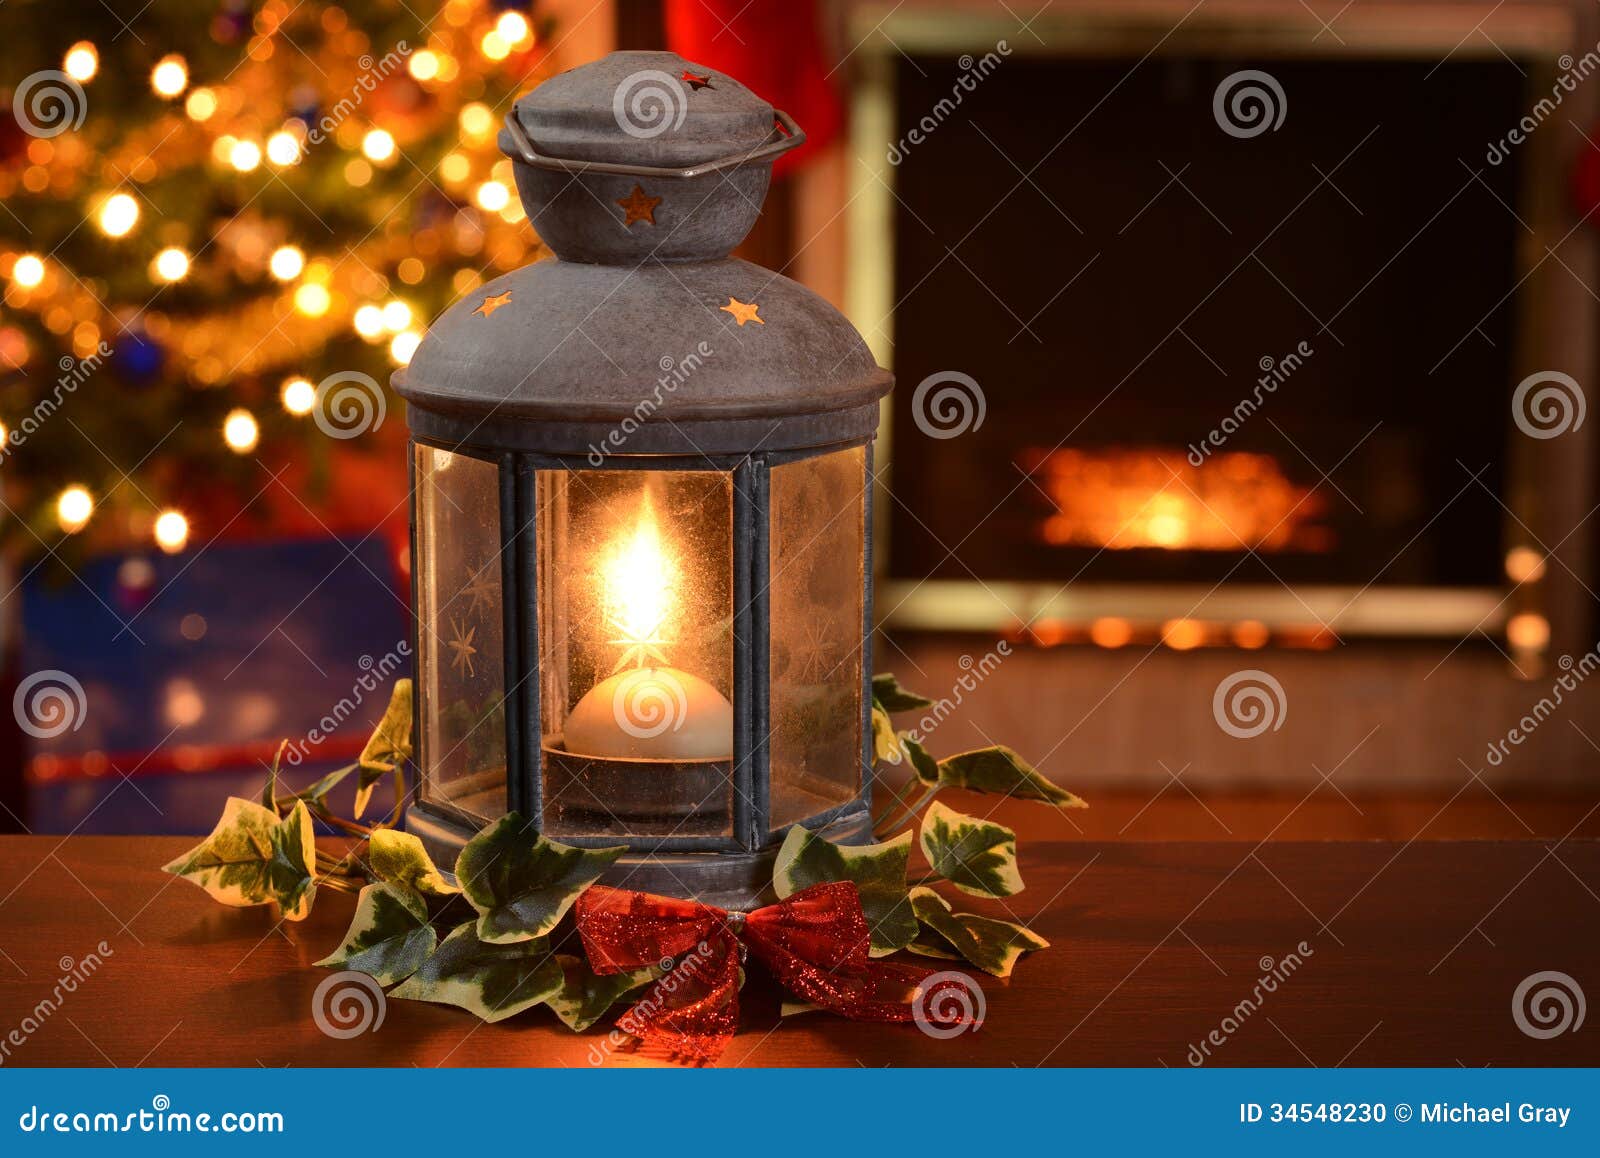 Lanterne de Noël photo stock. Image du illuminé, chandelles - 34548230